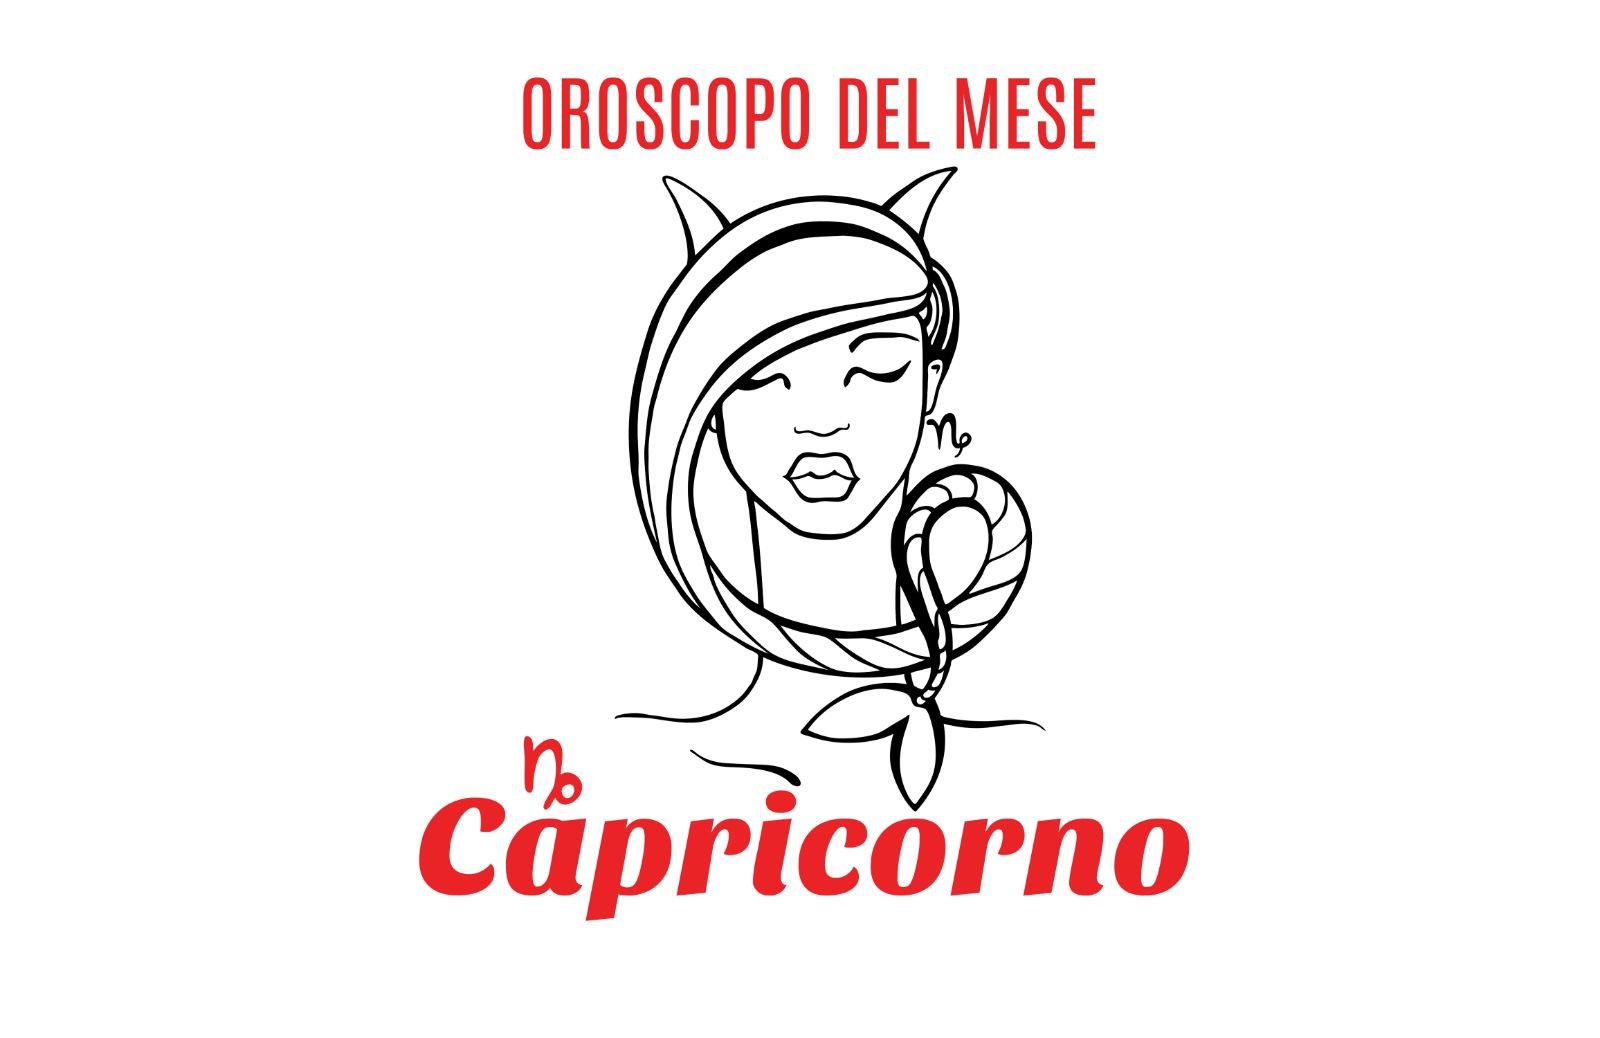 Oroscopo del mese: Capricorno - aprile 2019